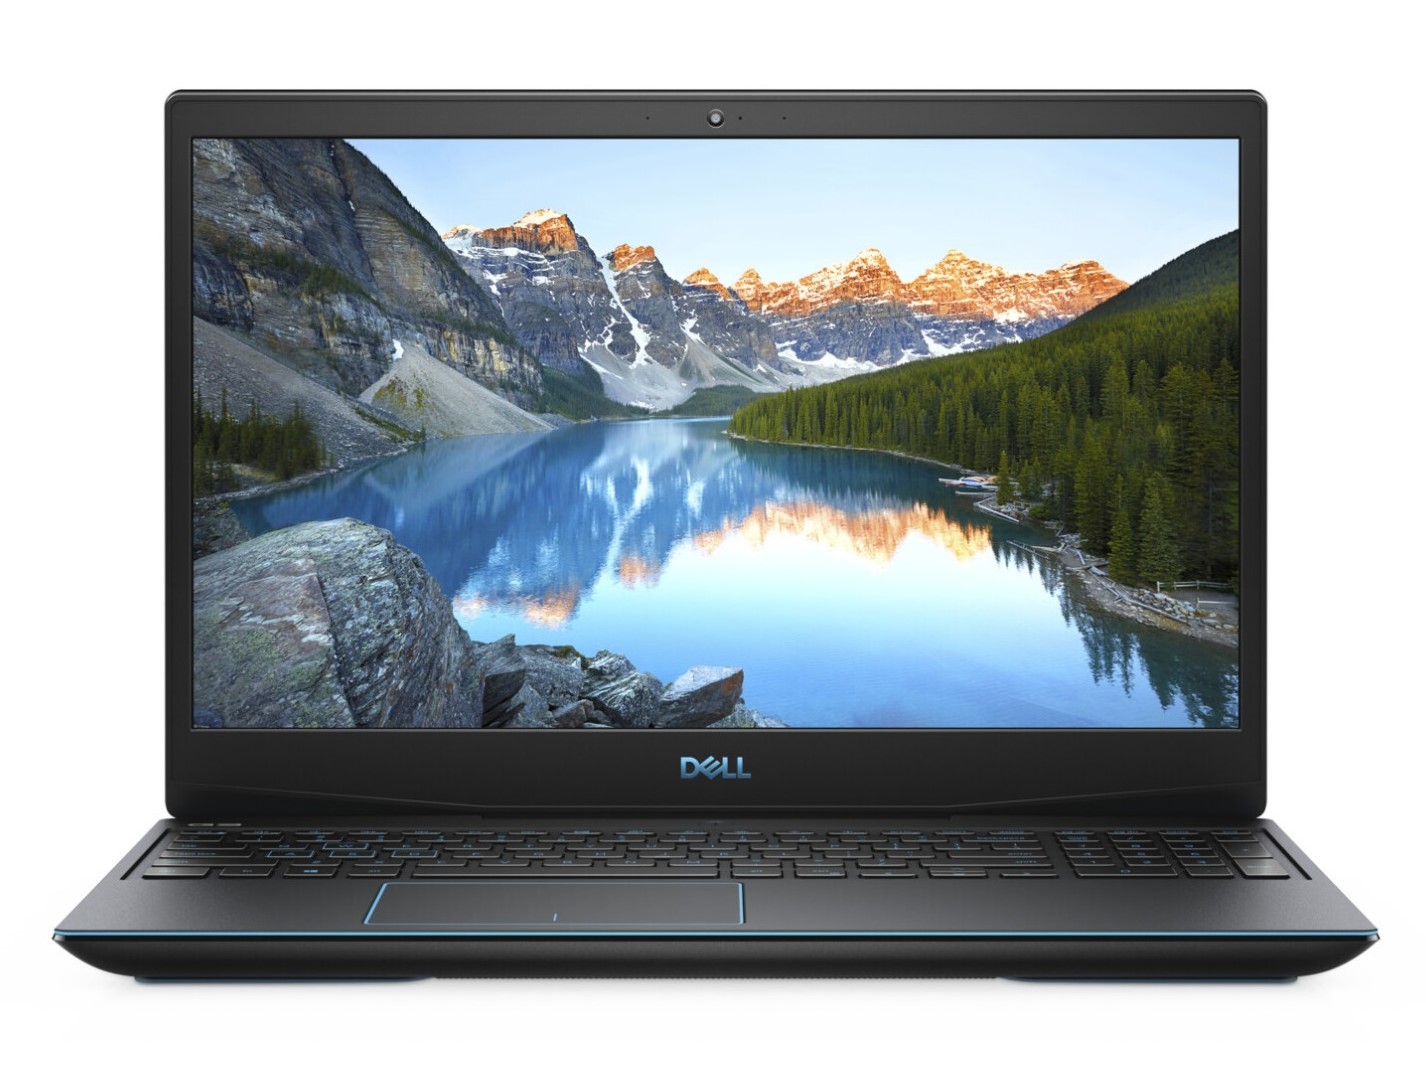 Dell G3 15 3500 Series - Notebookcheck.net External Reviews